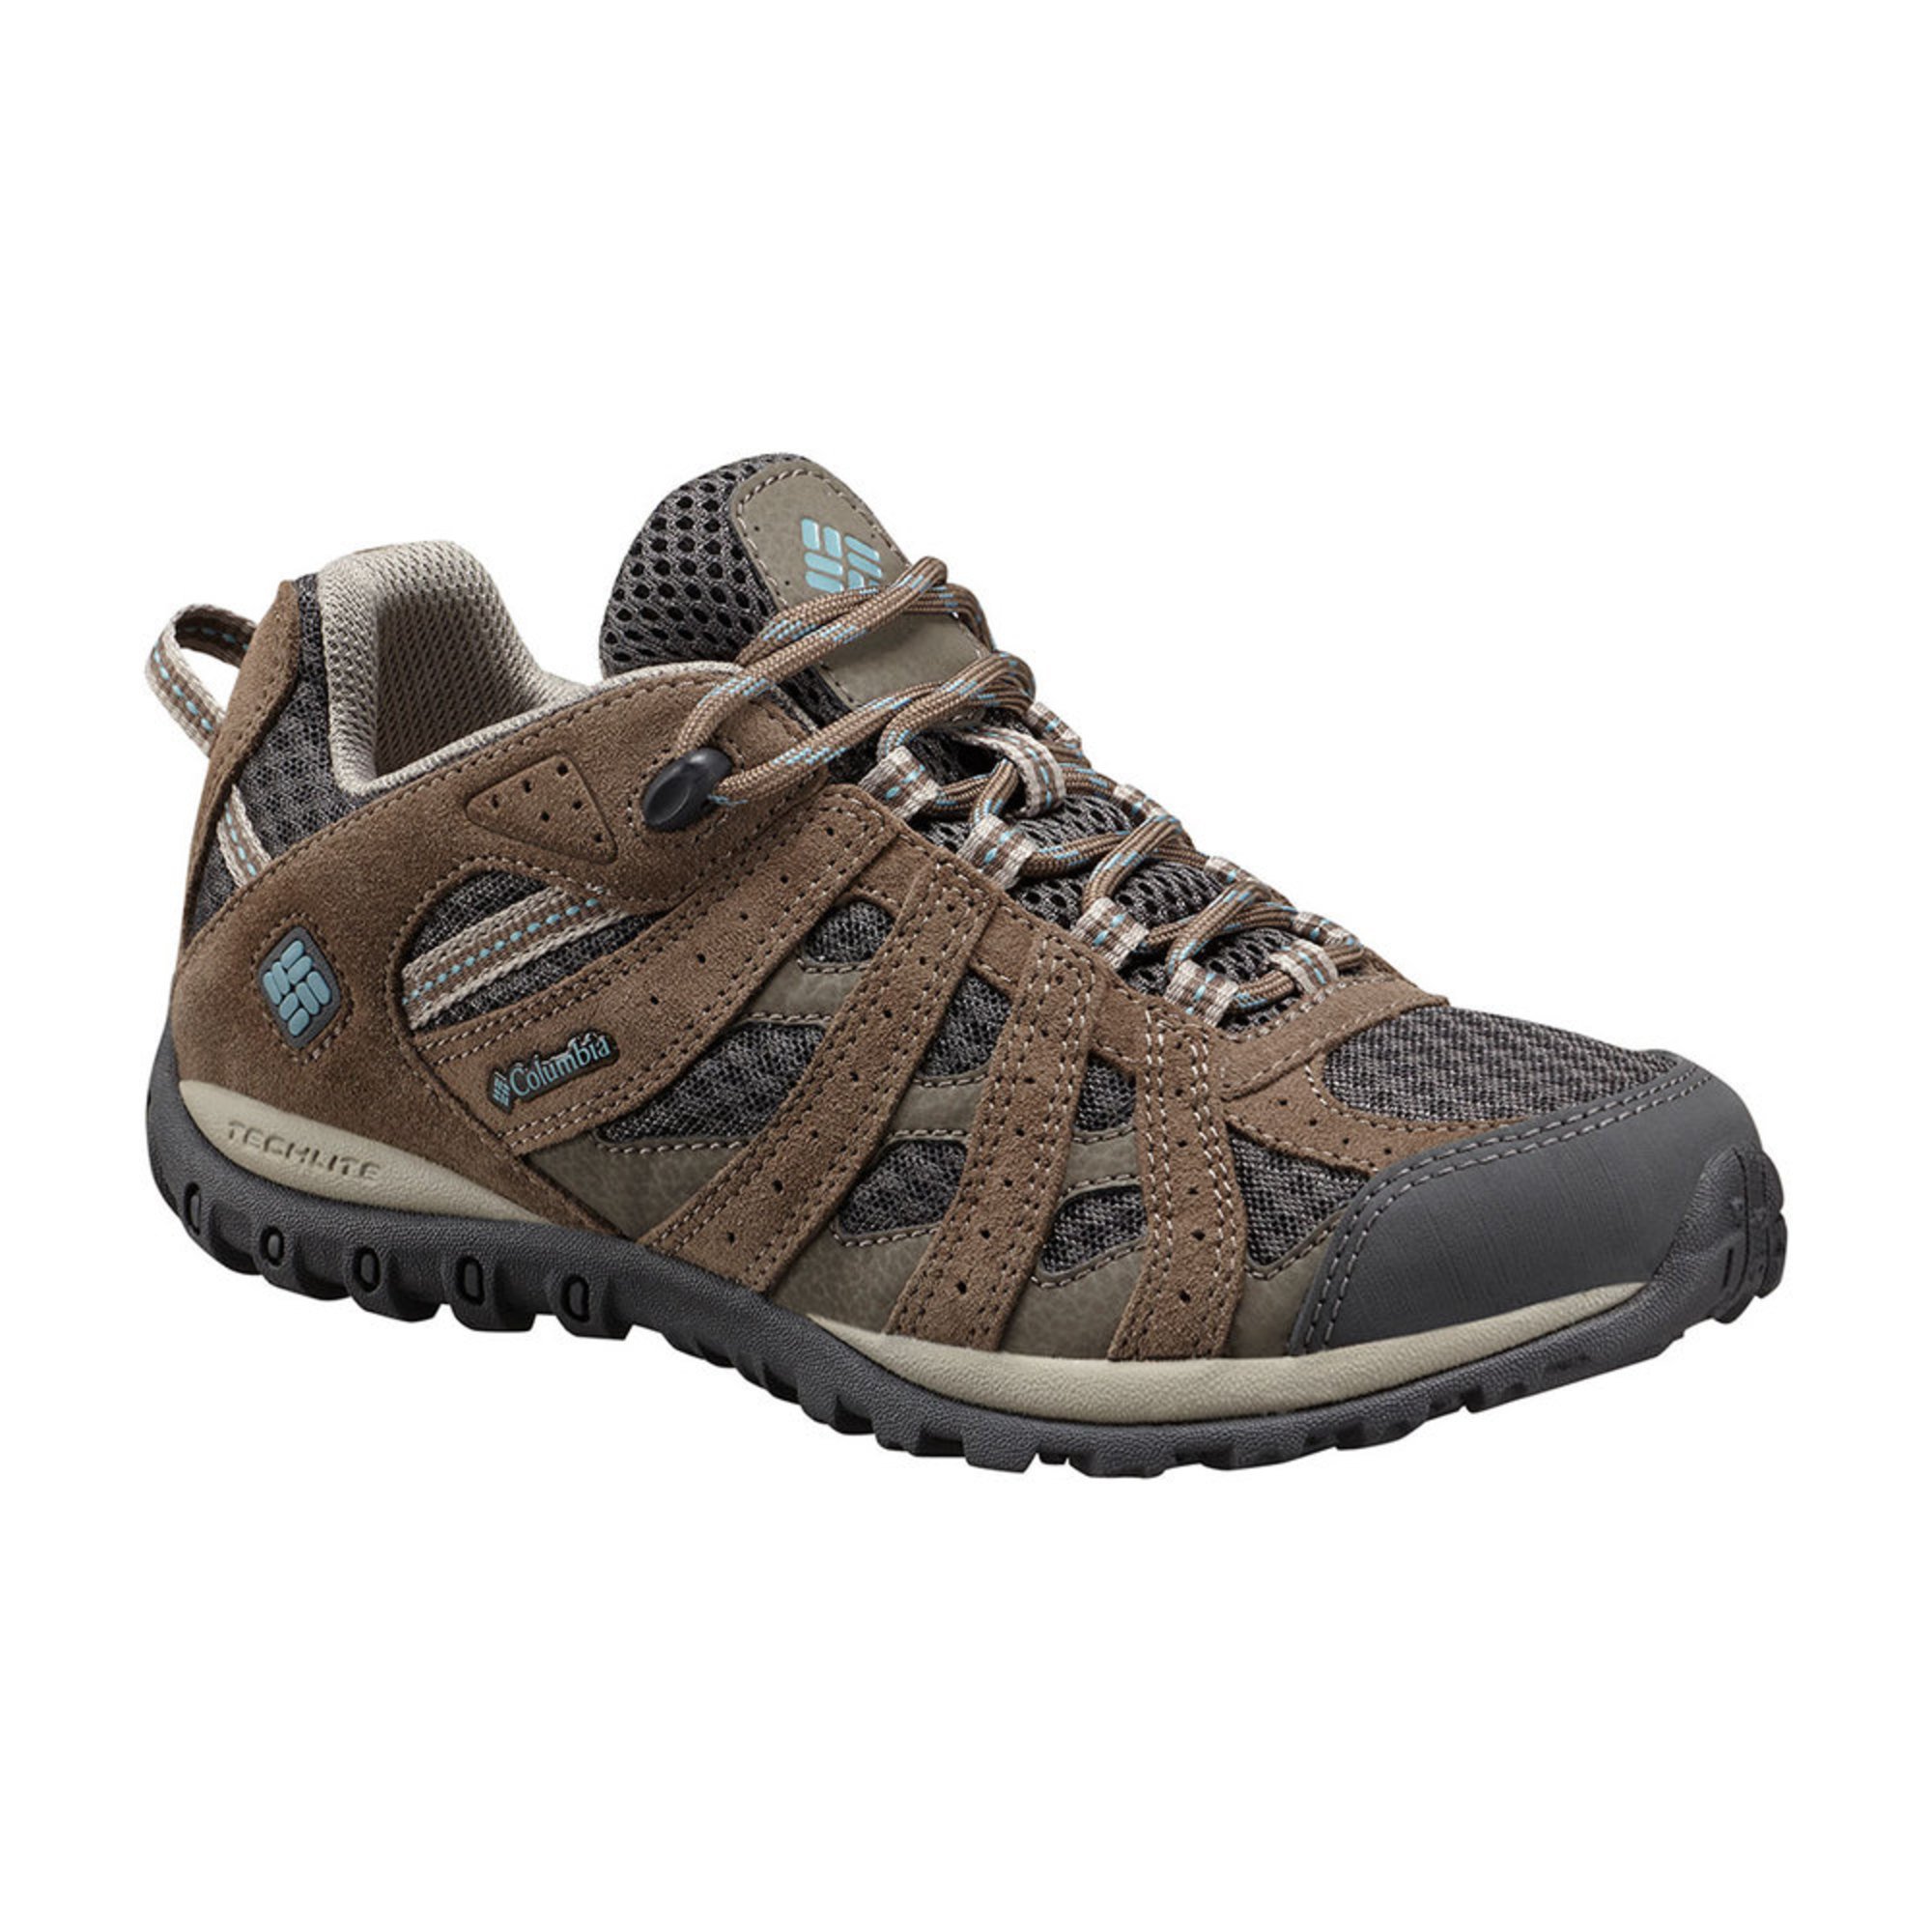 Columbia Women's Redmond Hiking Shoe | Women's Hiking And Outdoor Shoes ...